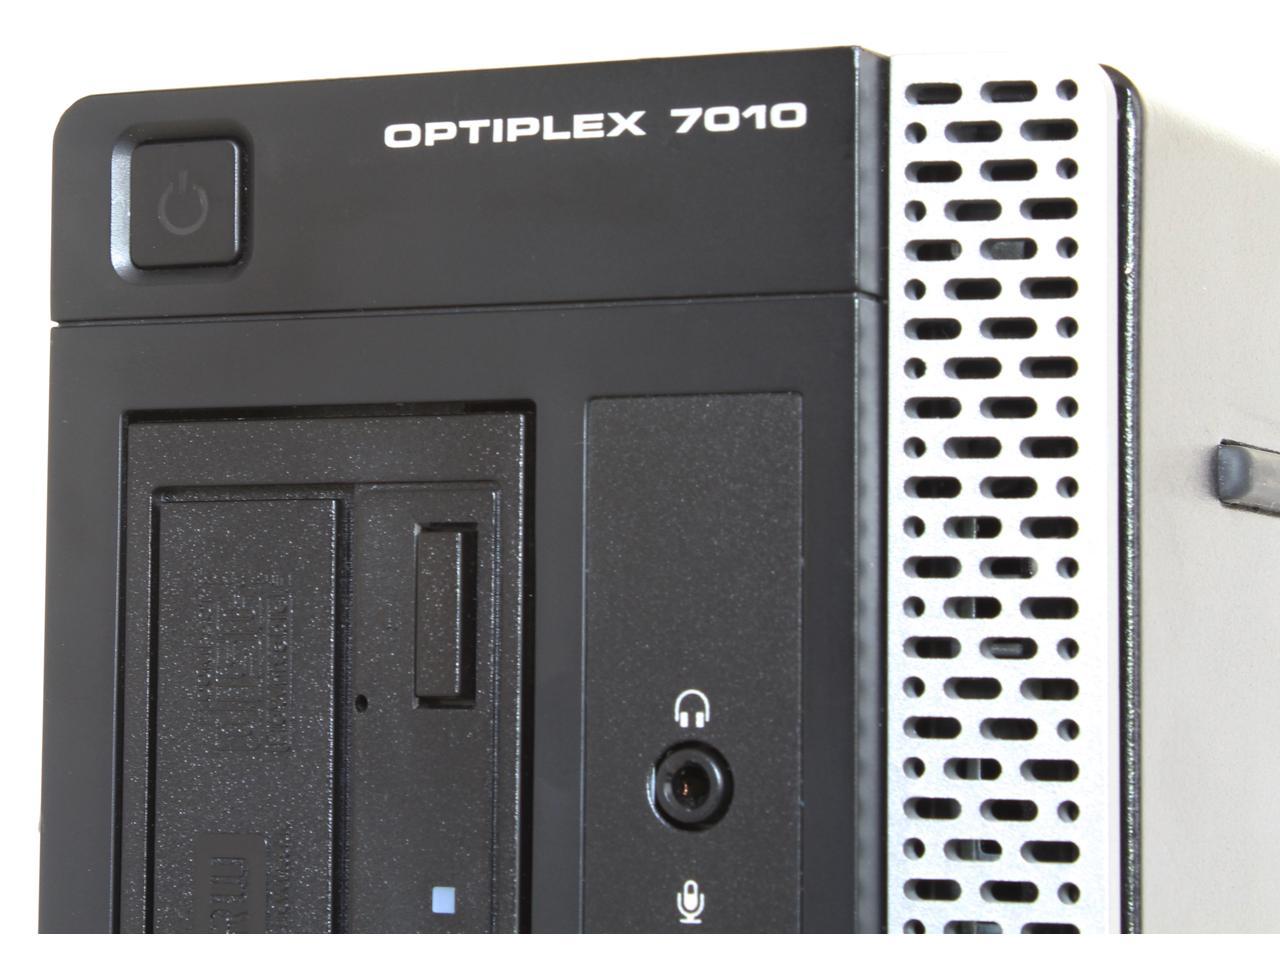 Dell Optiplex 7010 Desktop, Quad Core i7 3770 3.4Ghz, 16GB DDR3 RAM, 1TB SSD Hard Drive, DVDRW, Windows 10 Pro